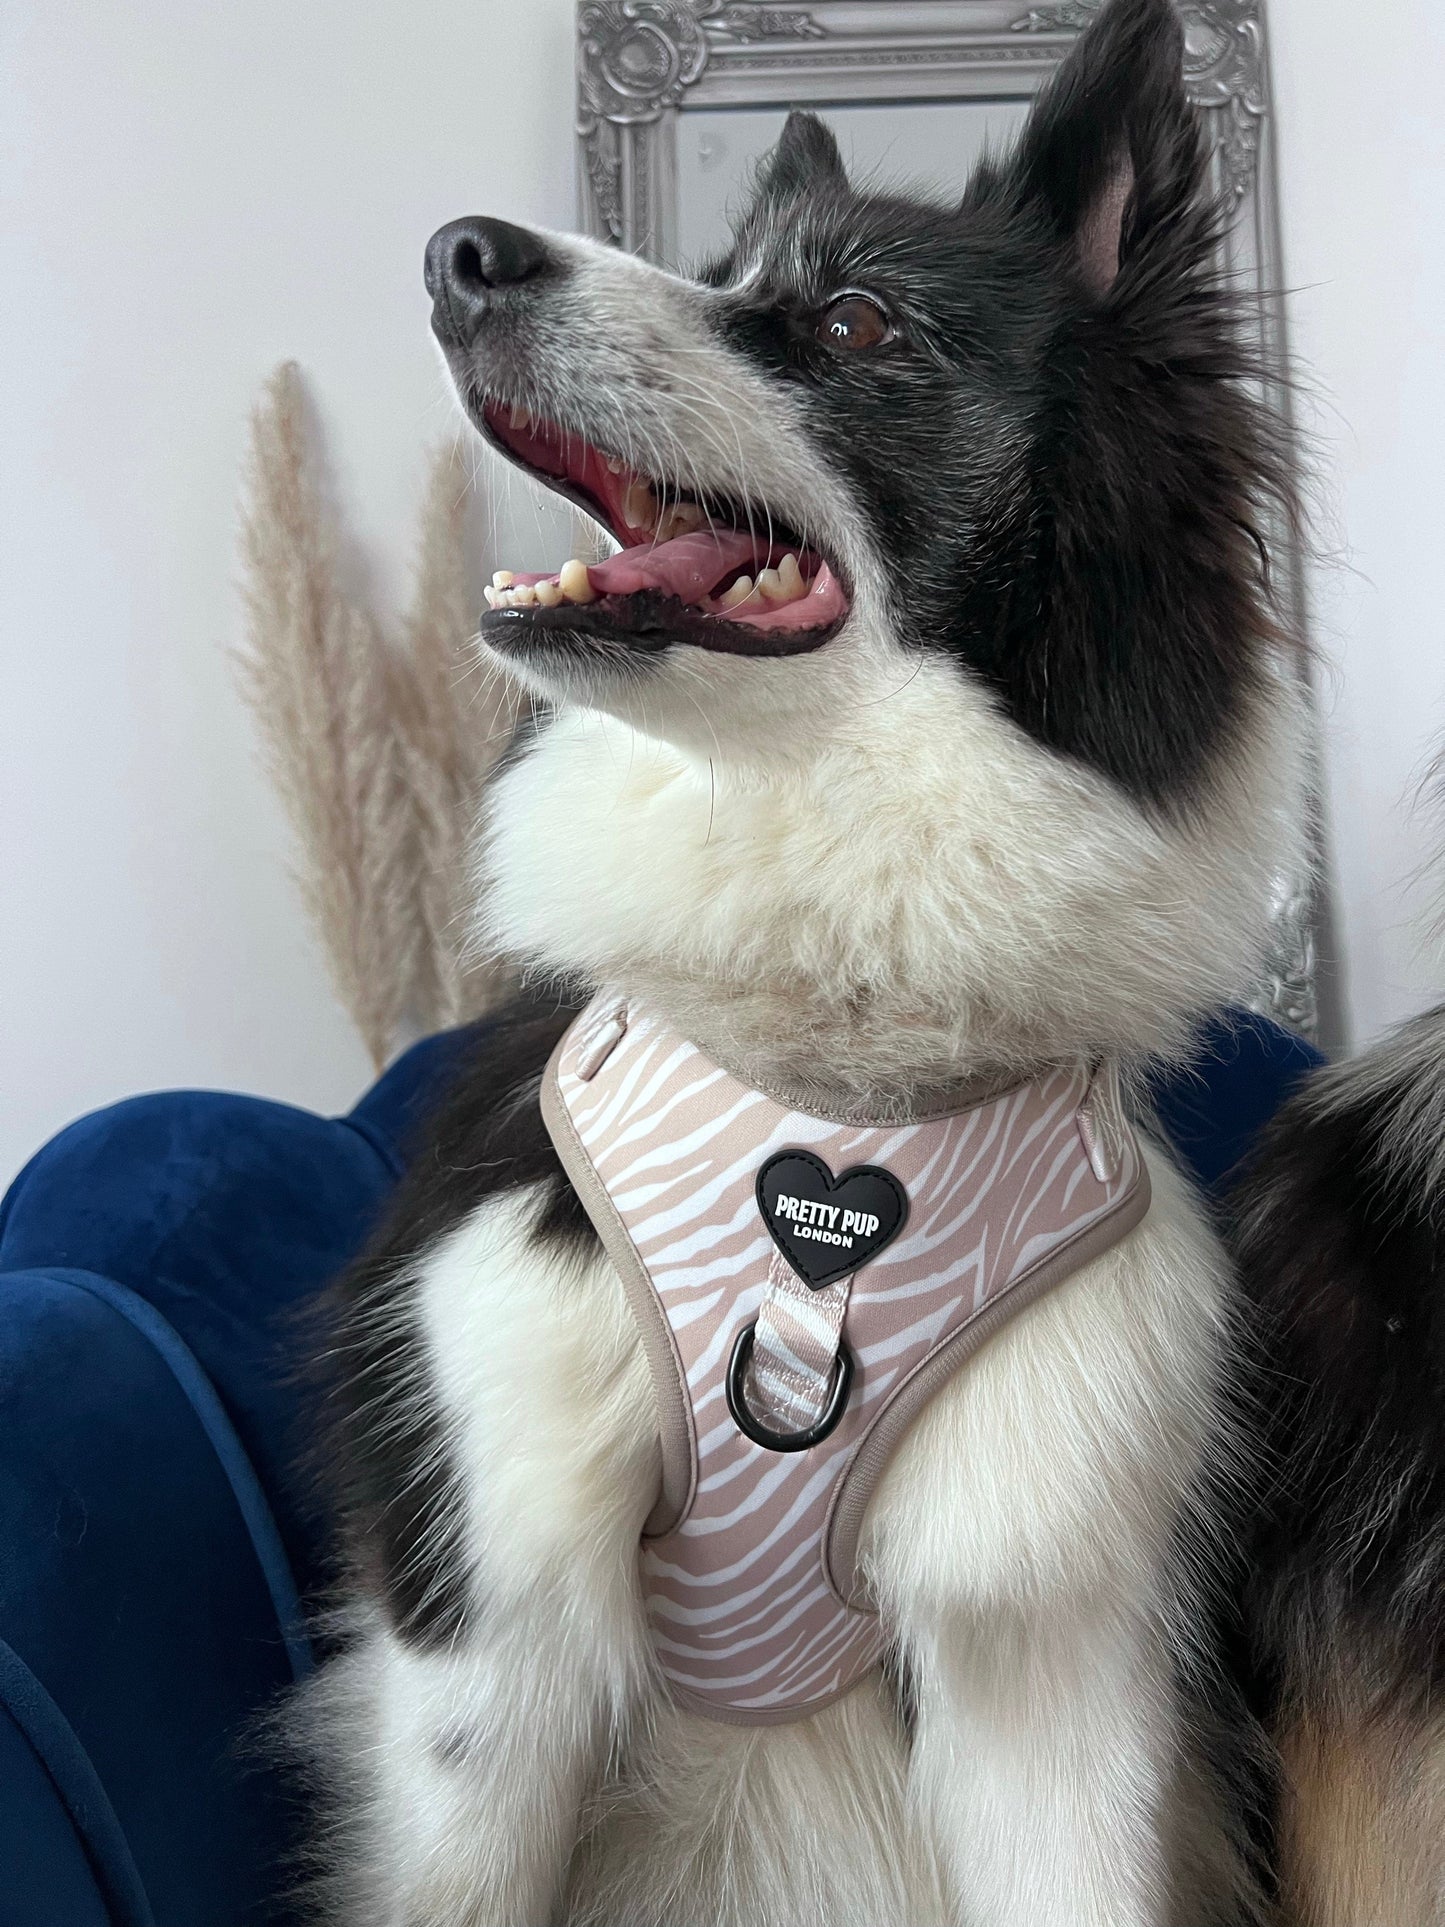 Luxury Dog Harness Adjustable